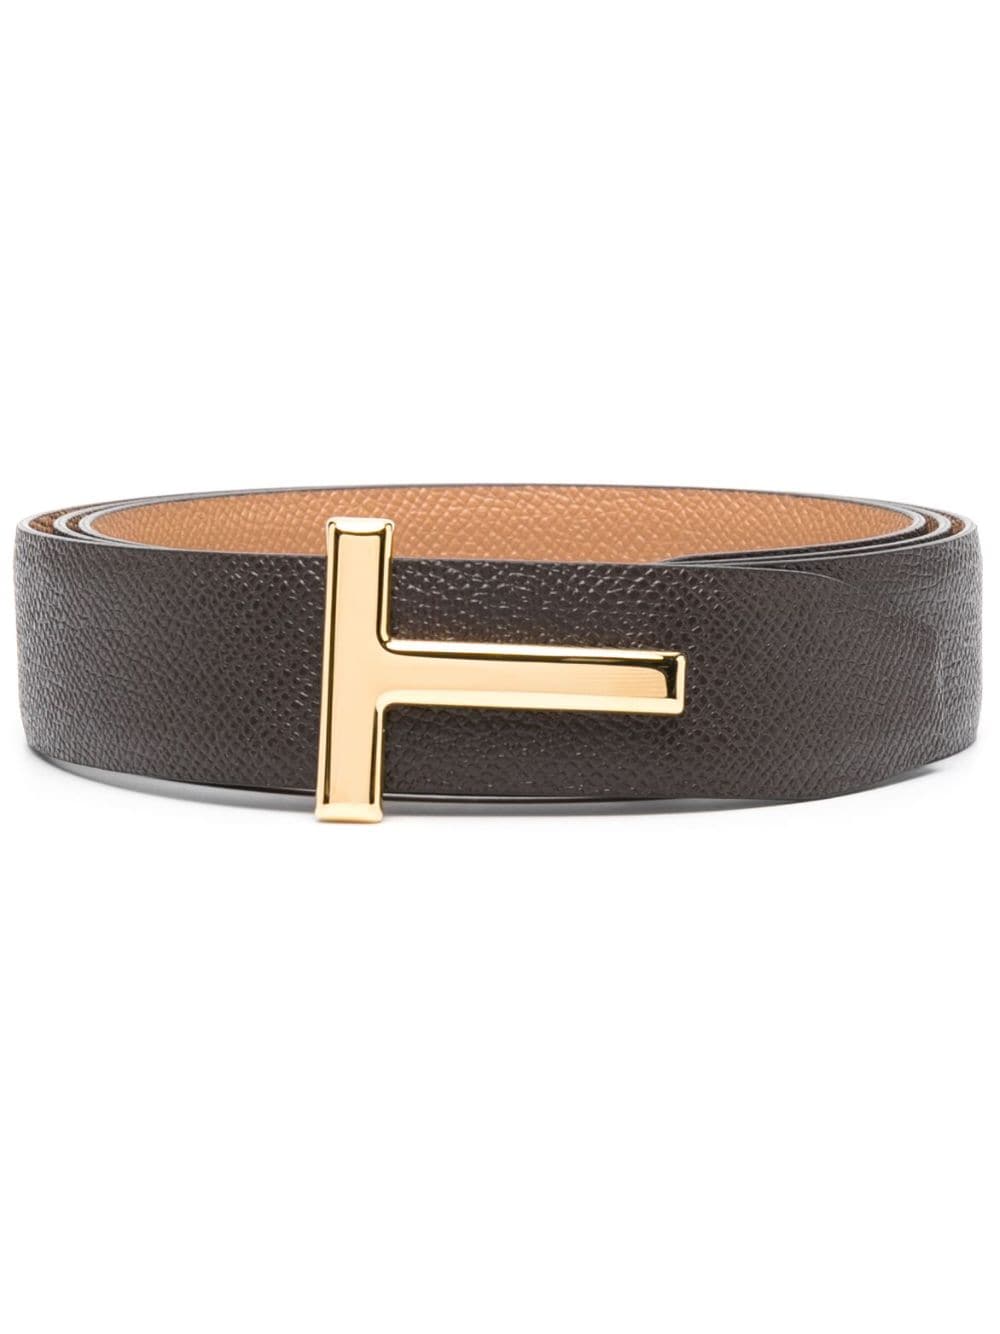 TOM FORD logo-buckle Leather Belt - Farfetch